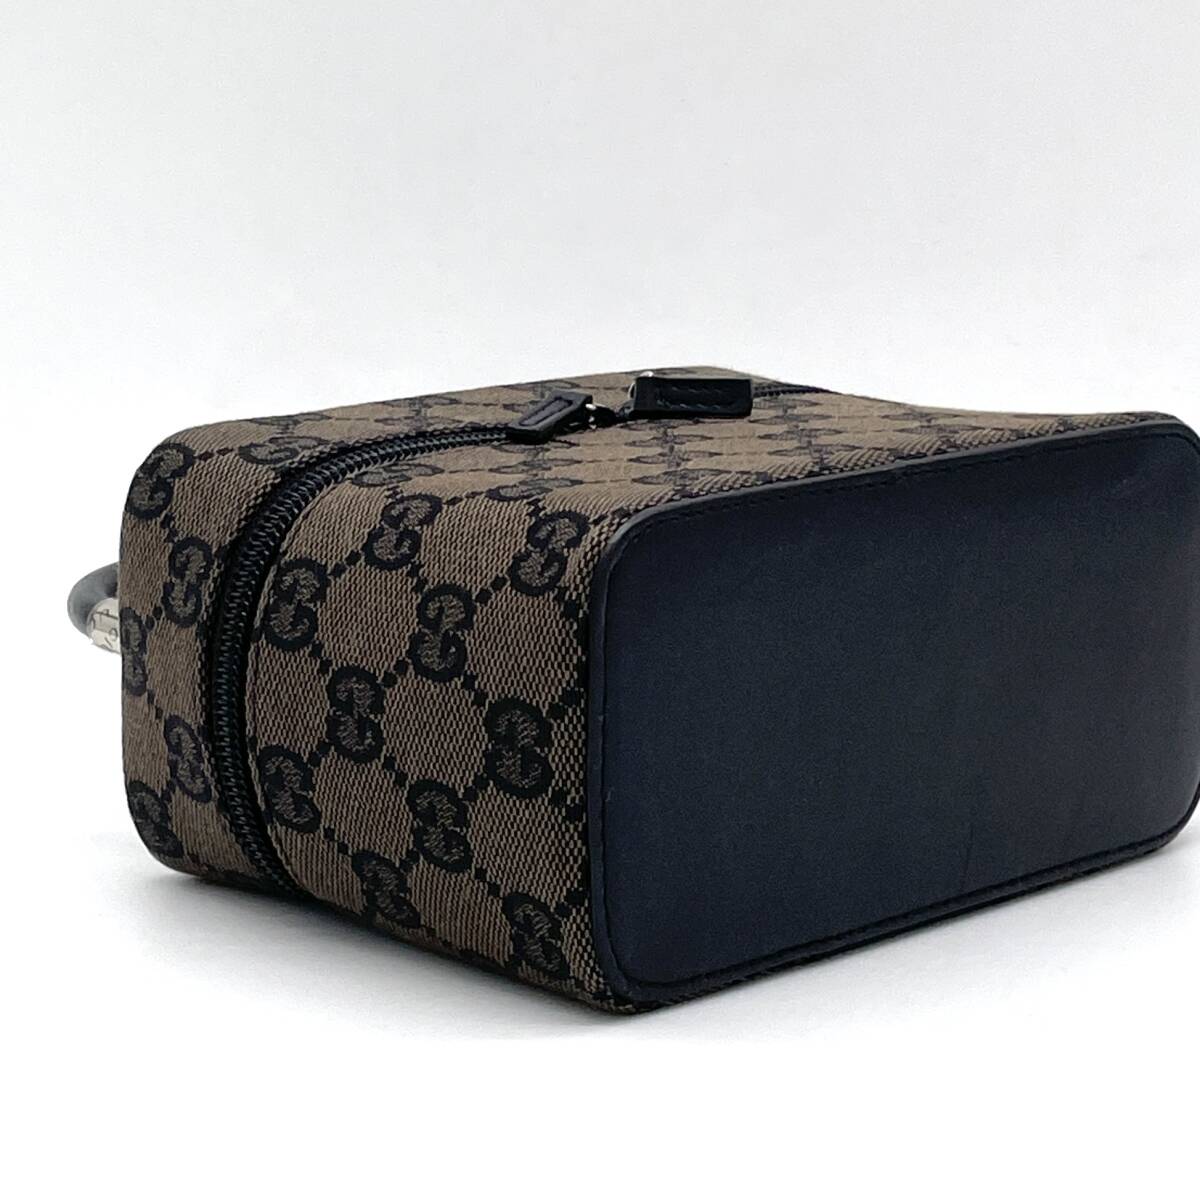 1 иен превосходный товар GUCCI Gucci GG парусина кожа косметичка ручная сумочка темно-коричневый черный 039 1051